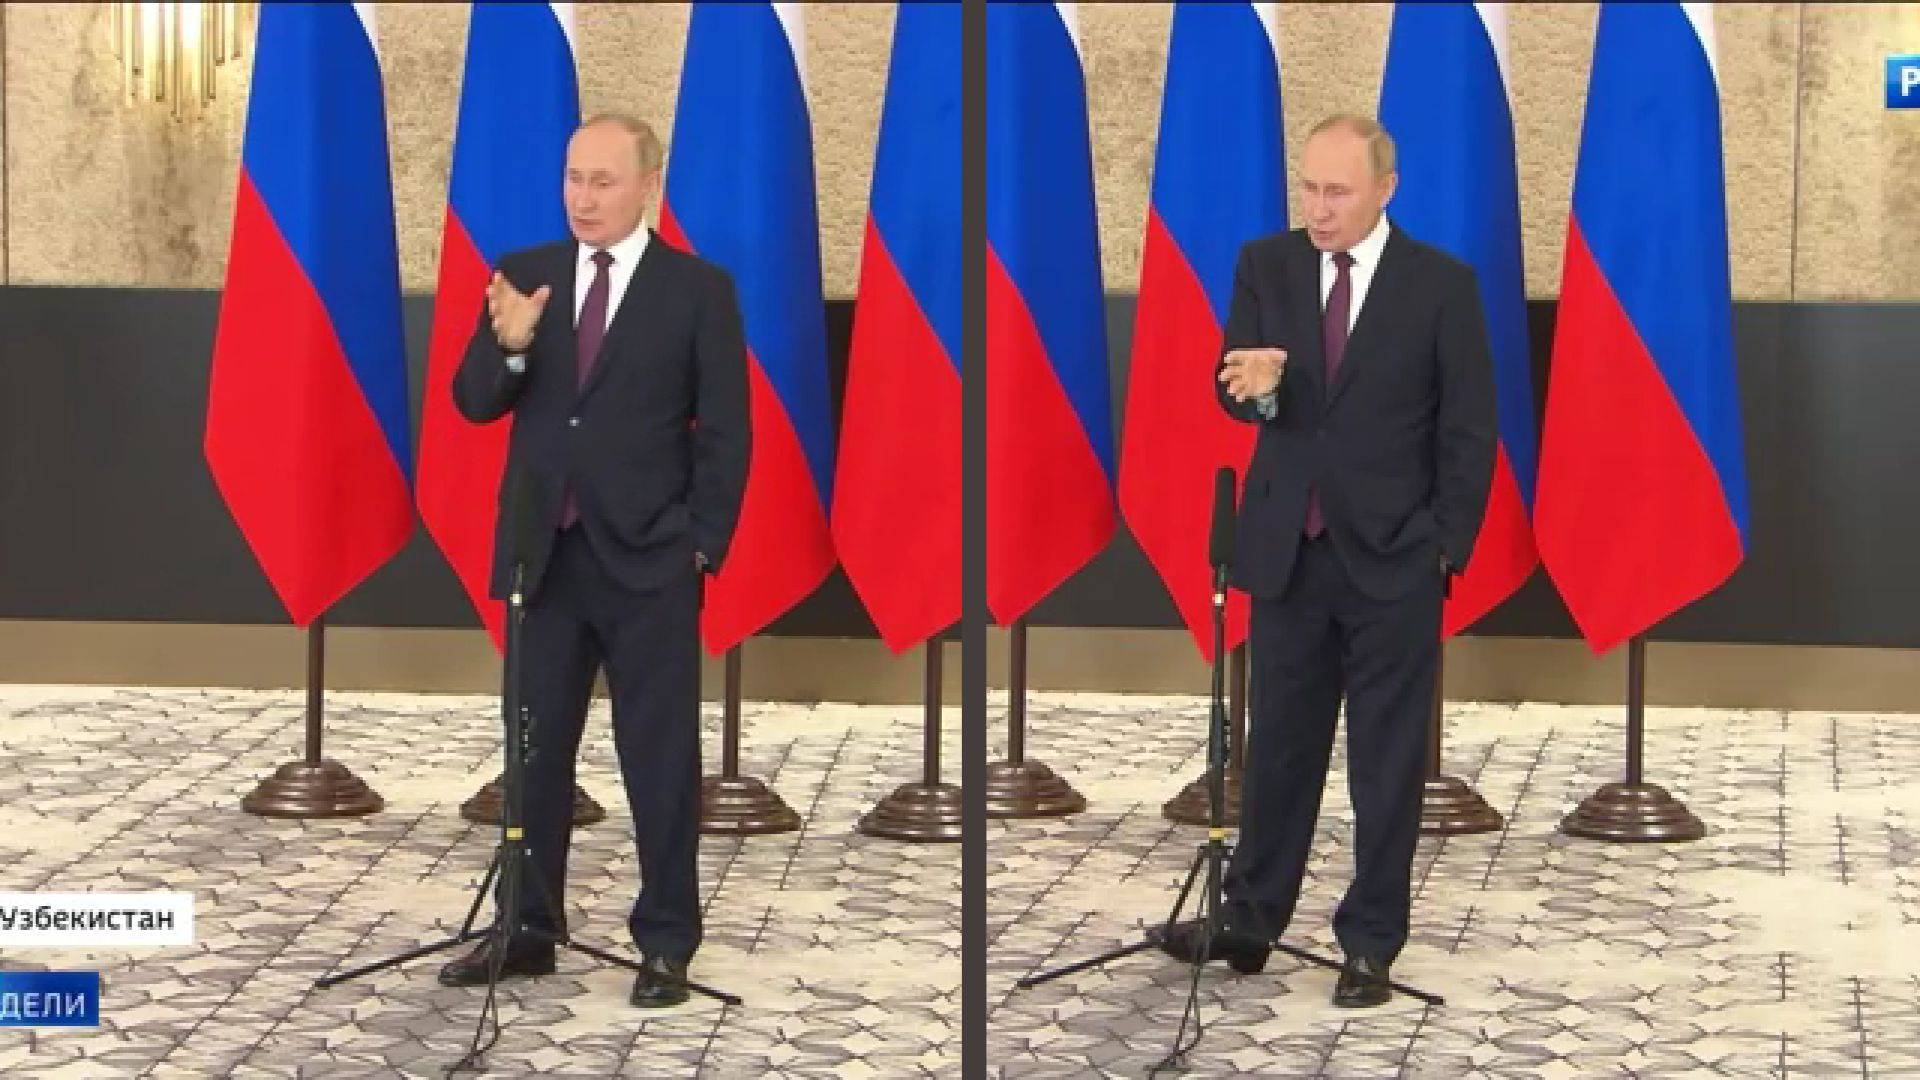 Dwa zdjęci pokazujące gestykulującego Putina (rusza reką i noga, drugą rękę trzyma w kieszeni)